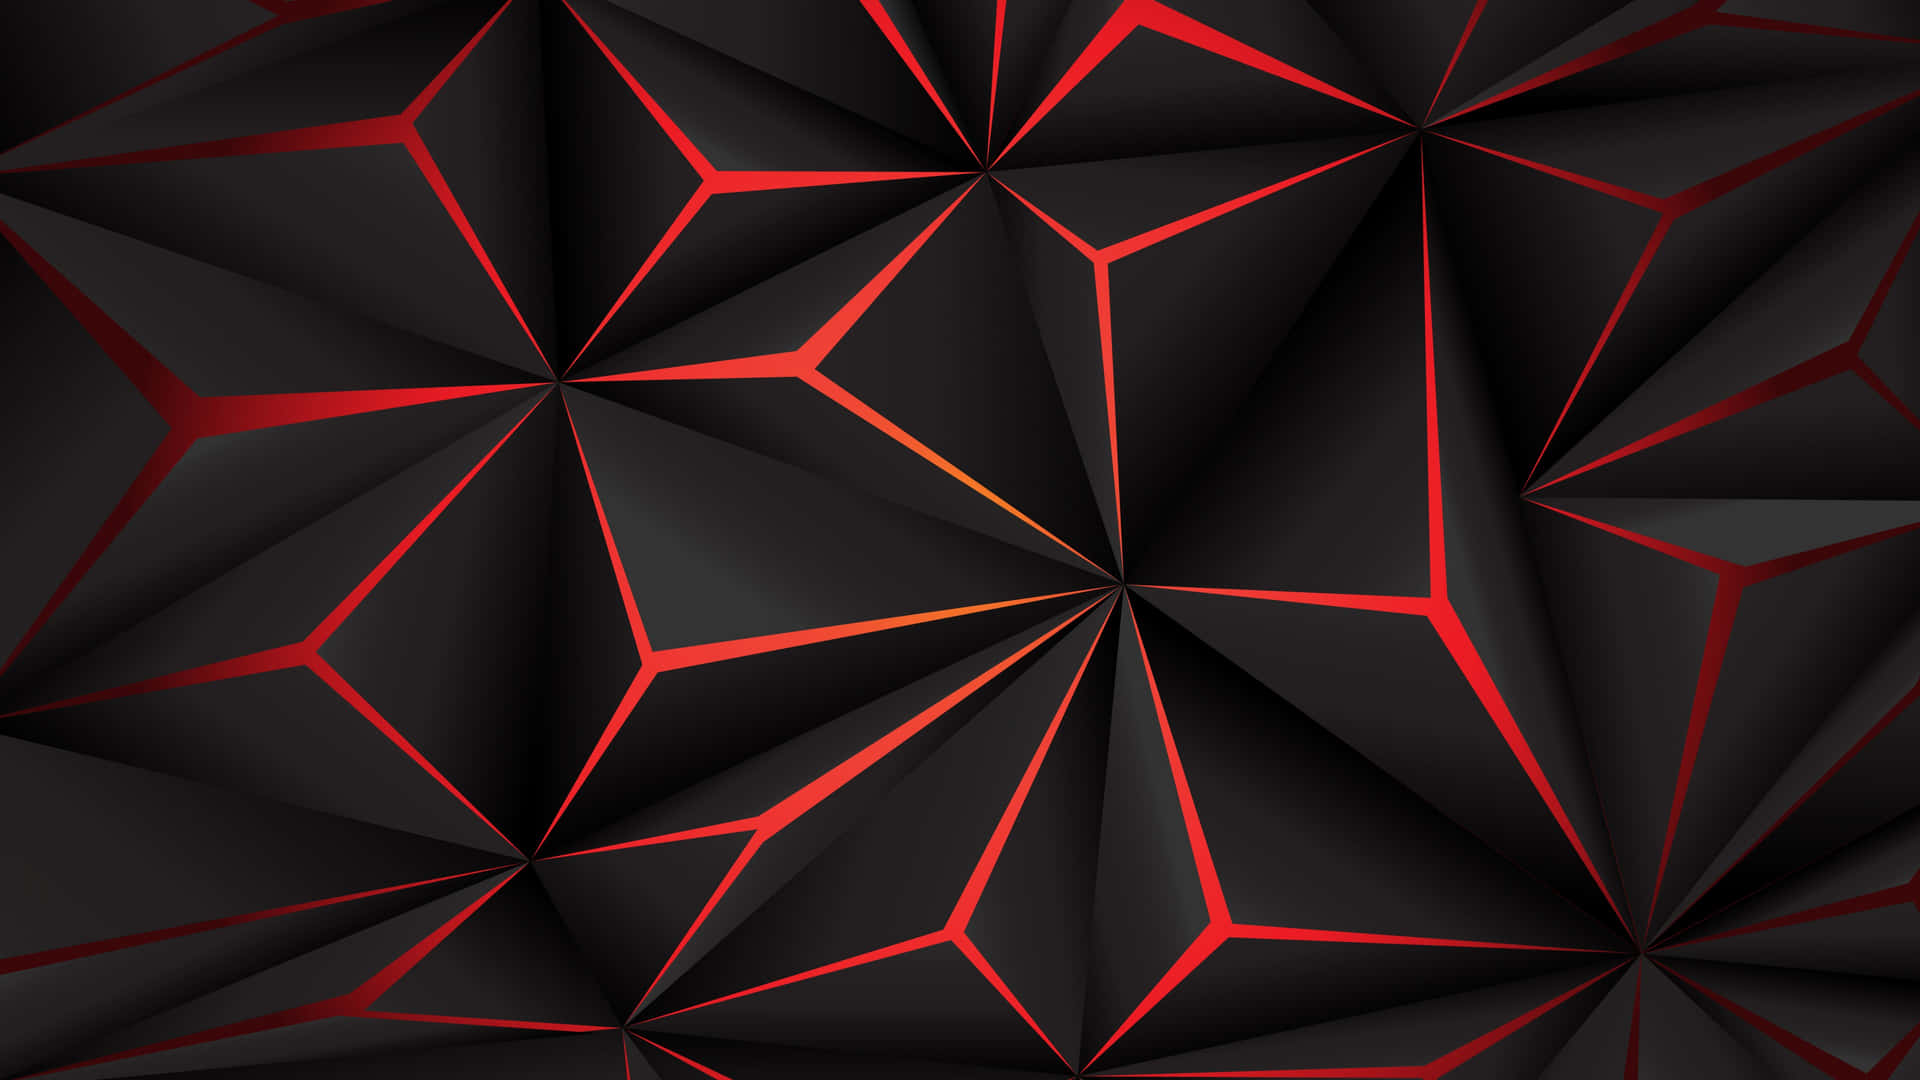 Lassensie Sich Von Diesem Geometrischen Hexagon-muster Verzaubern. Wallpaper